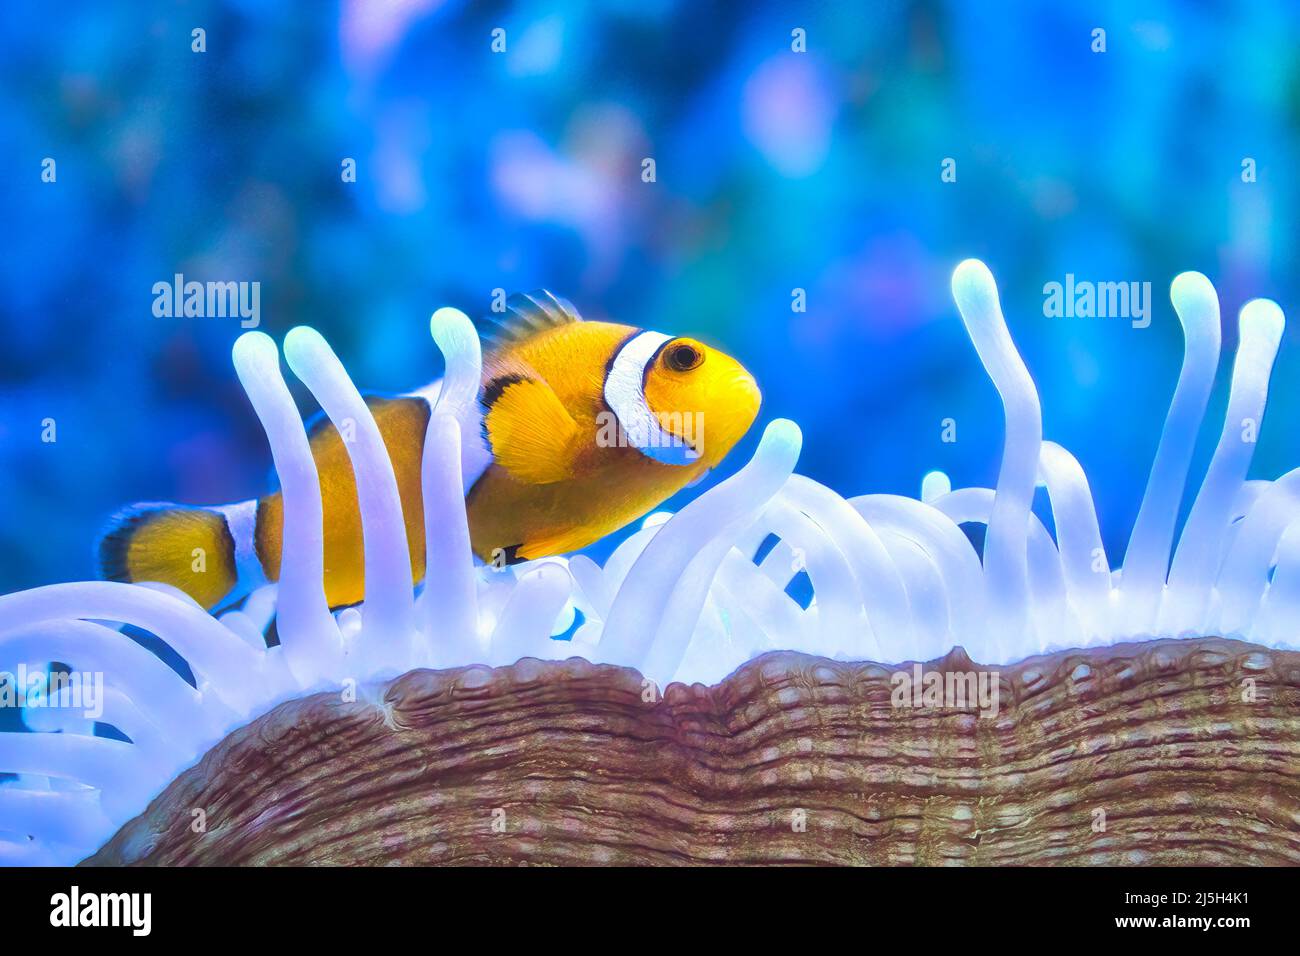 Ein gelber und weißer Clownfisch, der zwischen den Tentakeln einer Seeanemone schwimmt Stockfoto